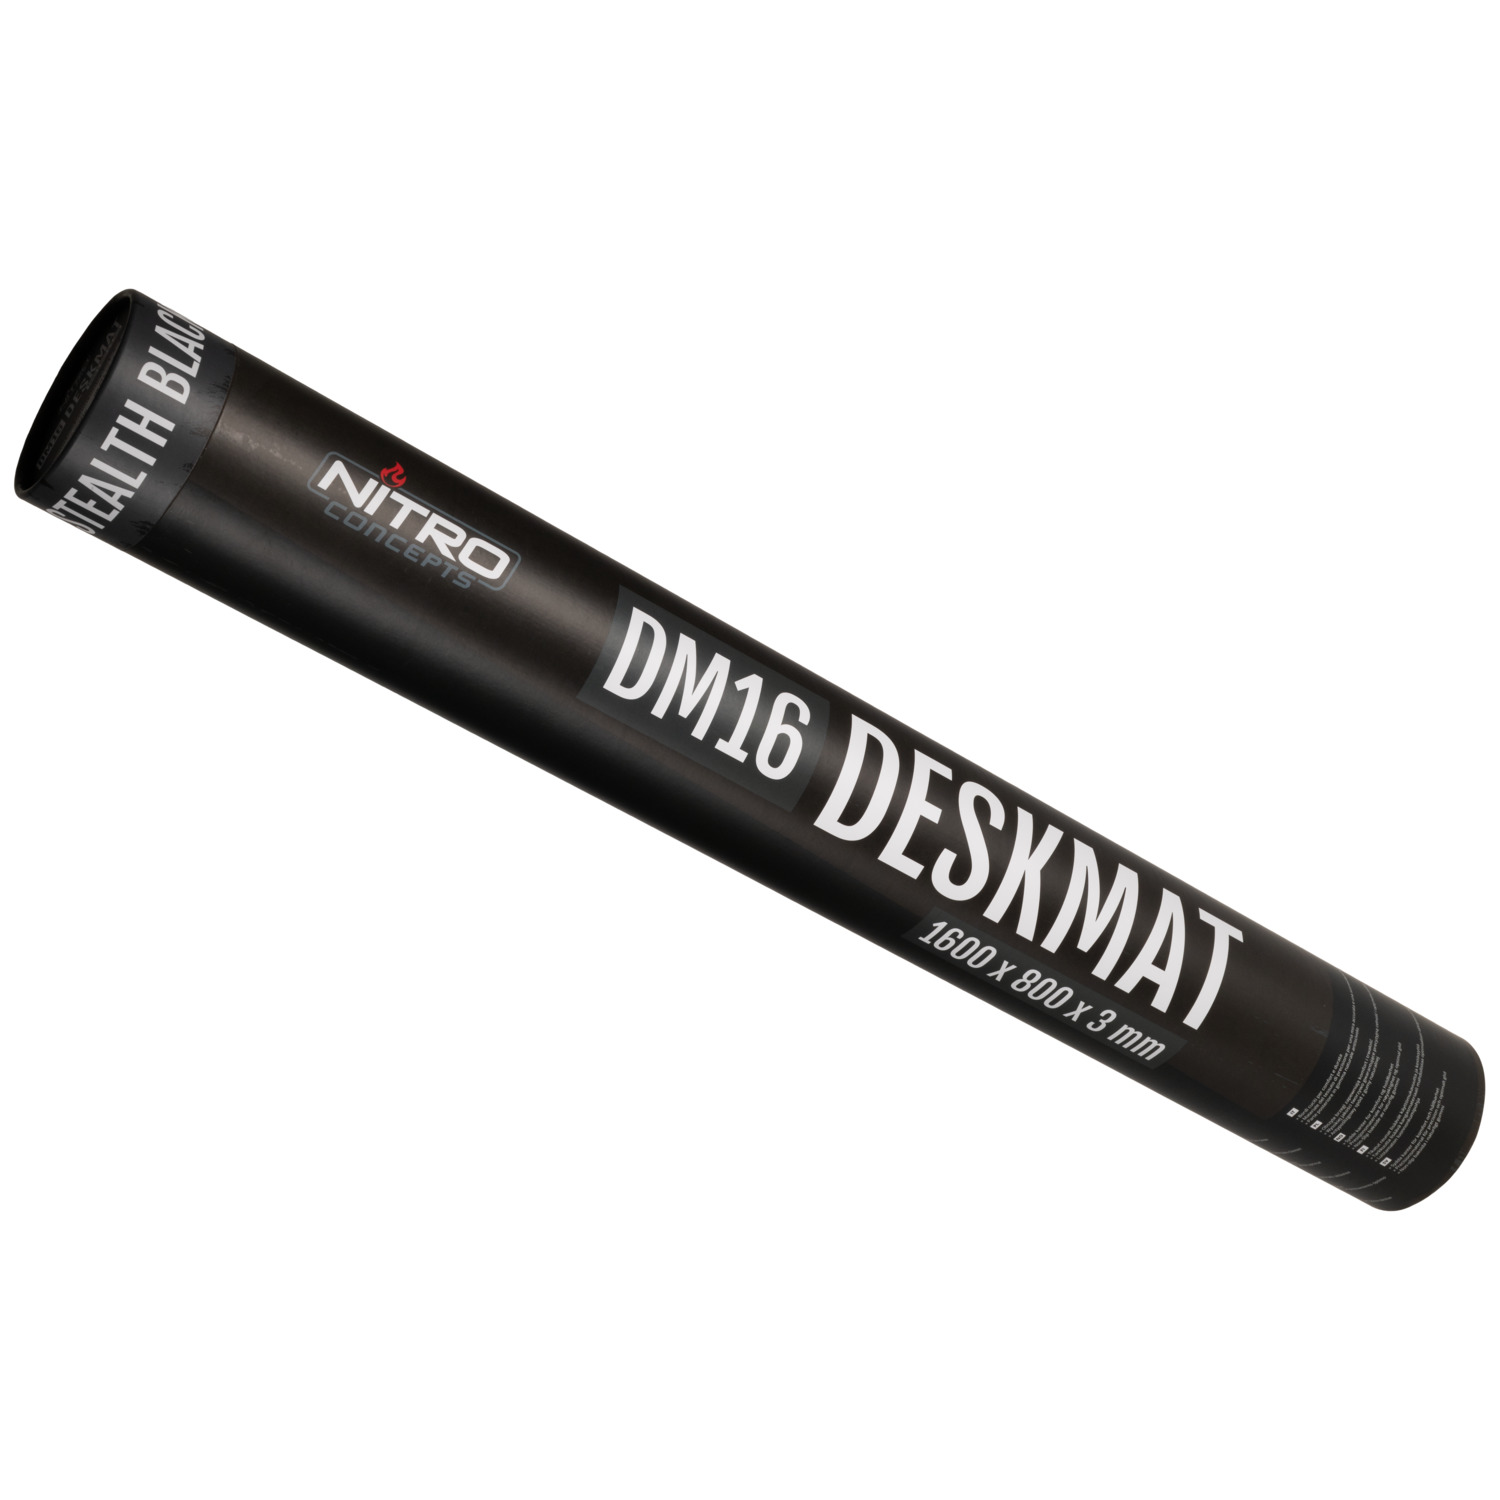 Deskmat DM16 - 1600x800mm - STEALTH BLACK